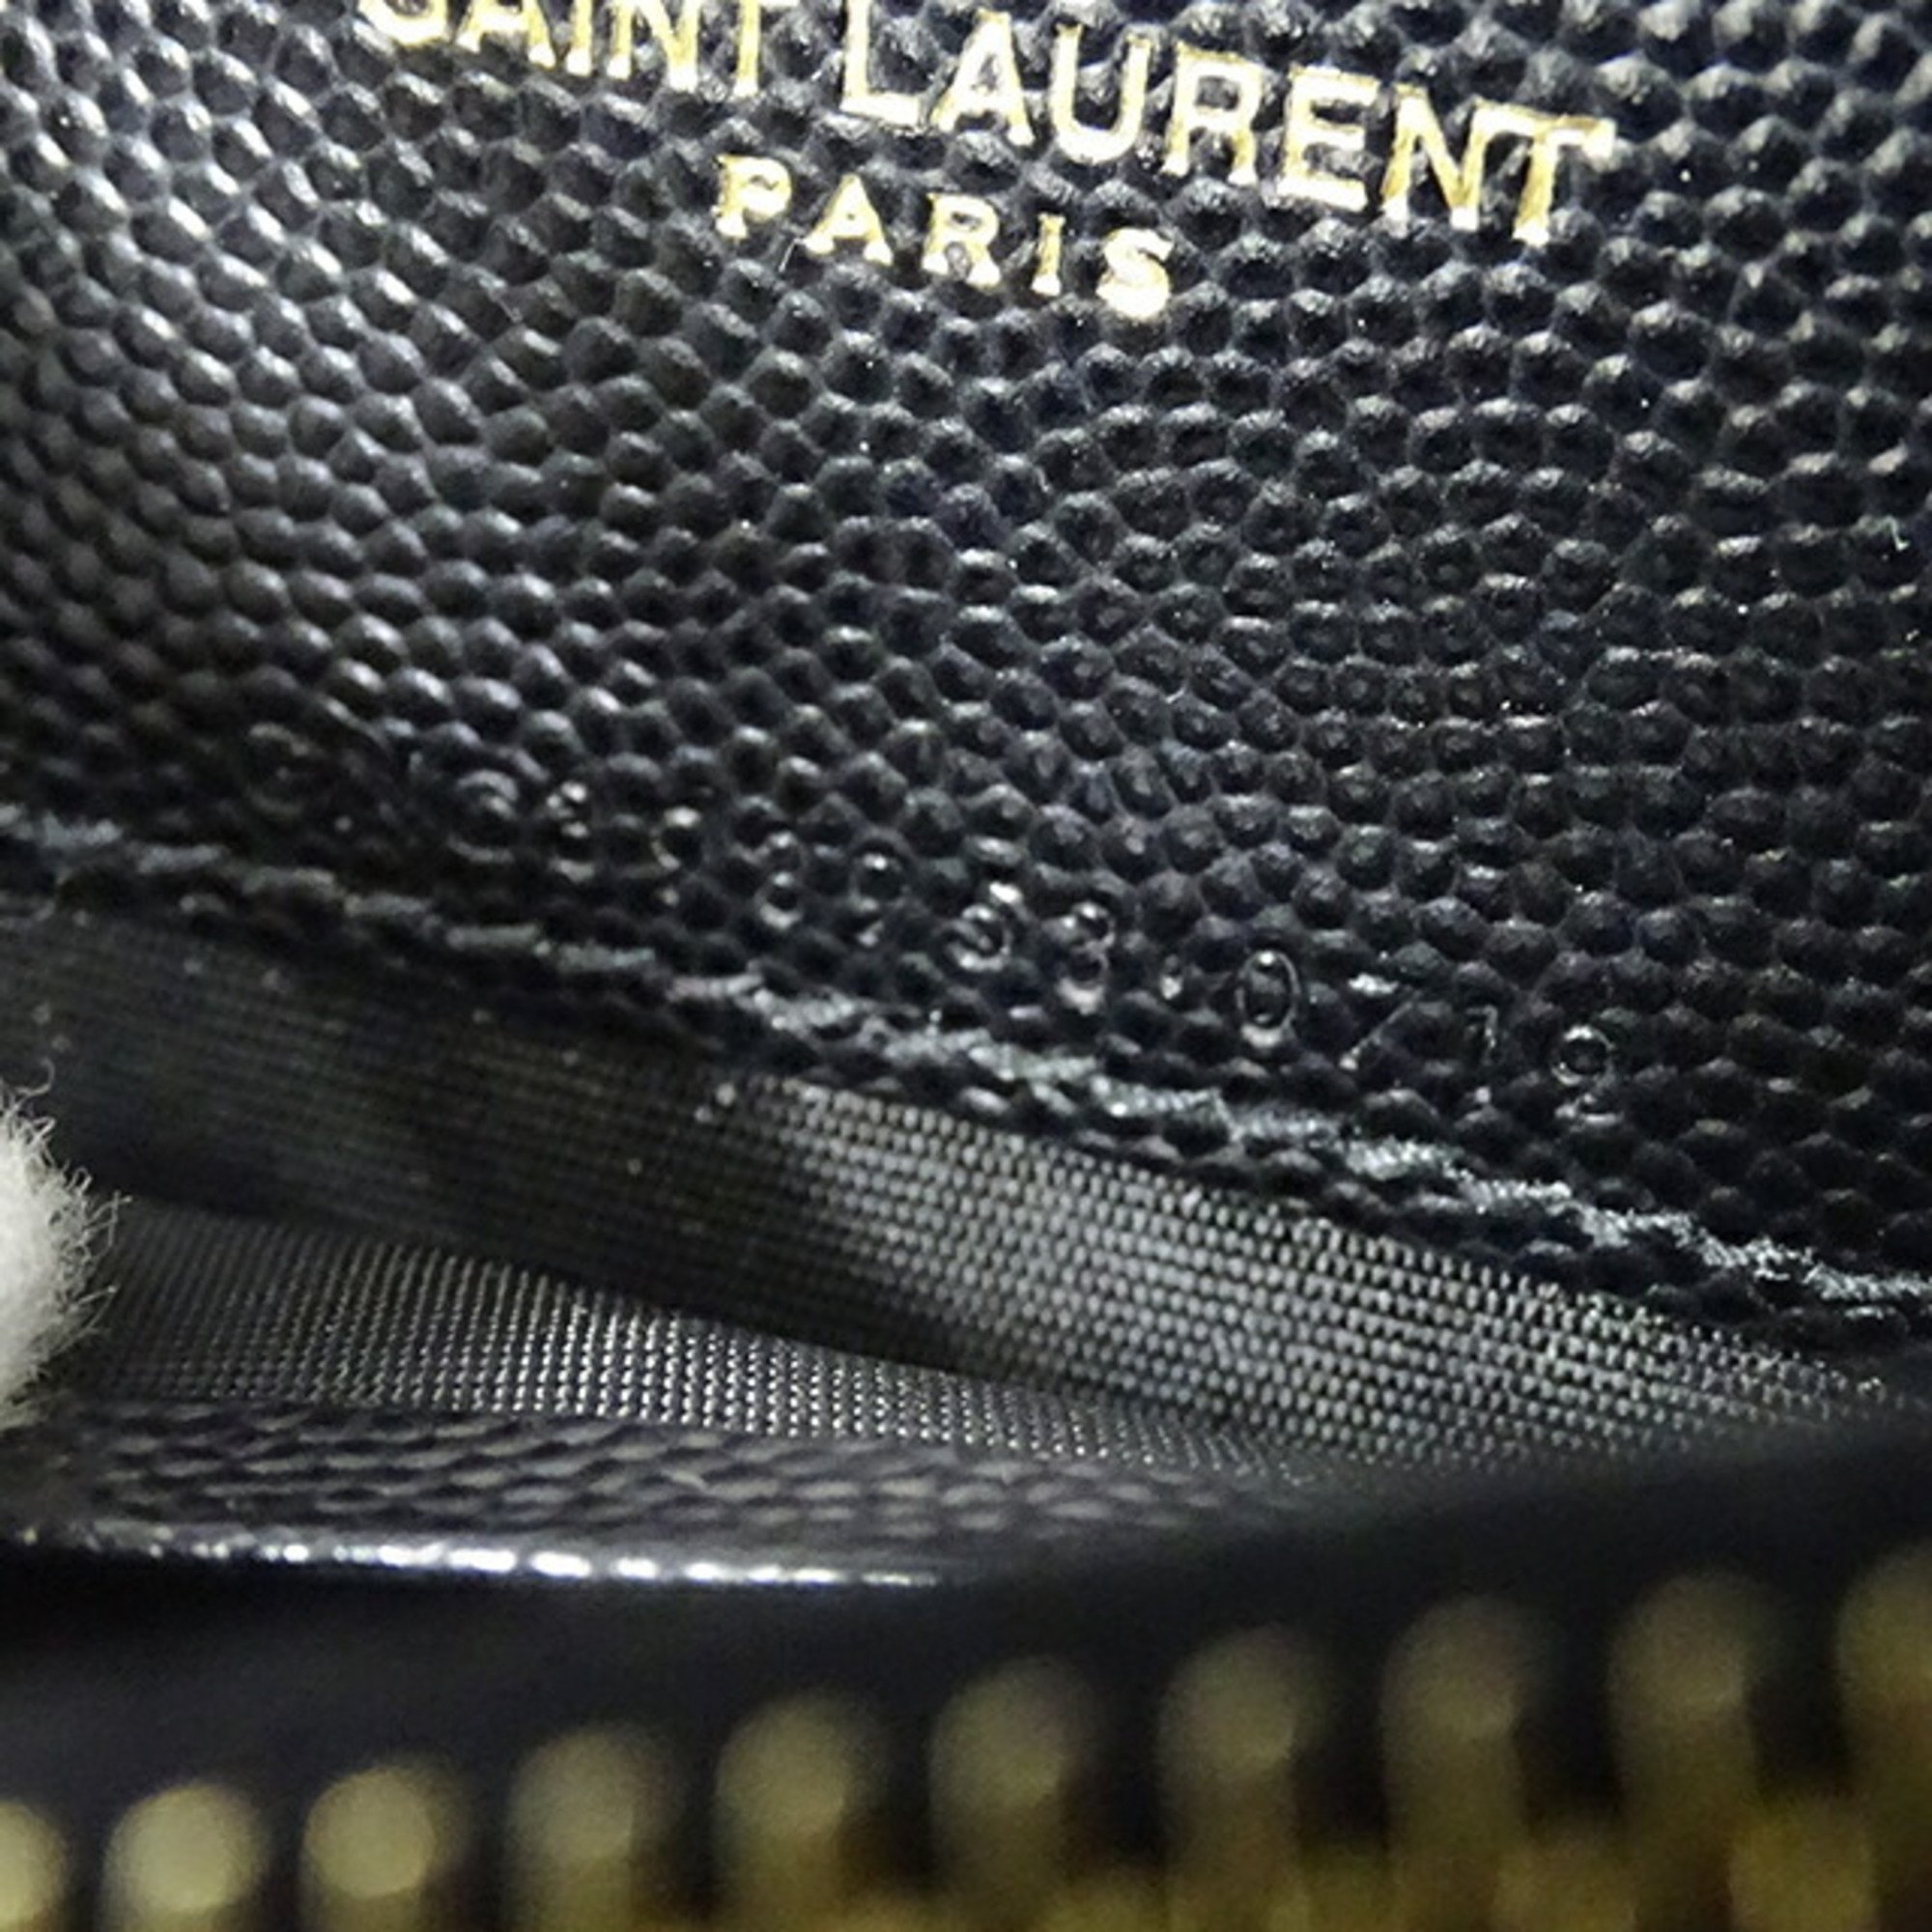 Saint Laurent SAINT LAURENT Bag Women's Shoulder Leather Envelope Chain Black Clutch